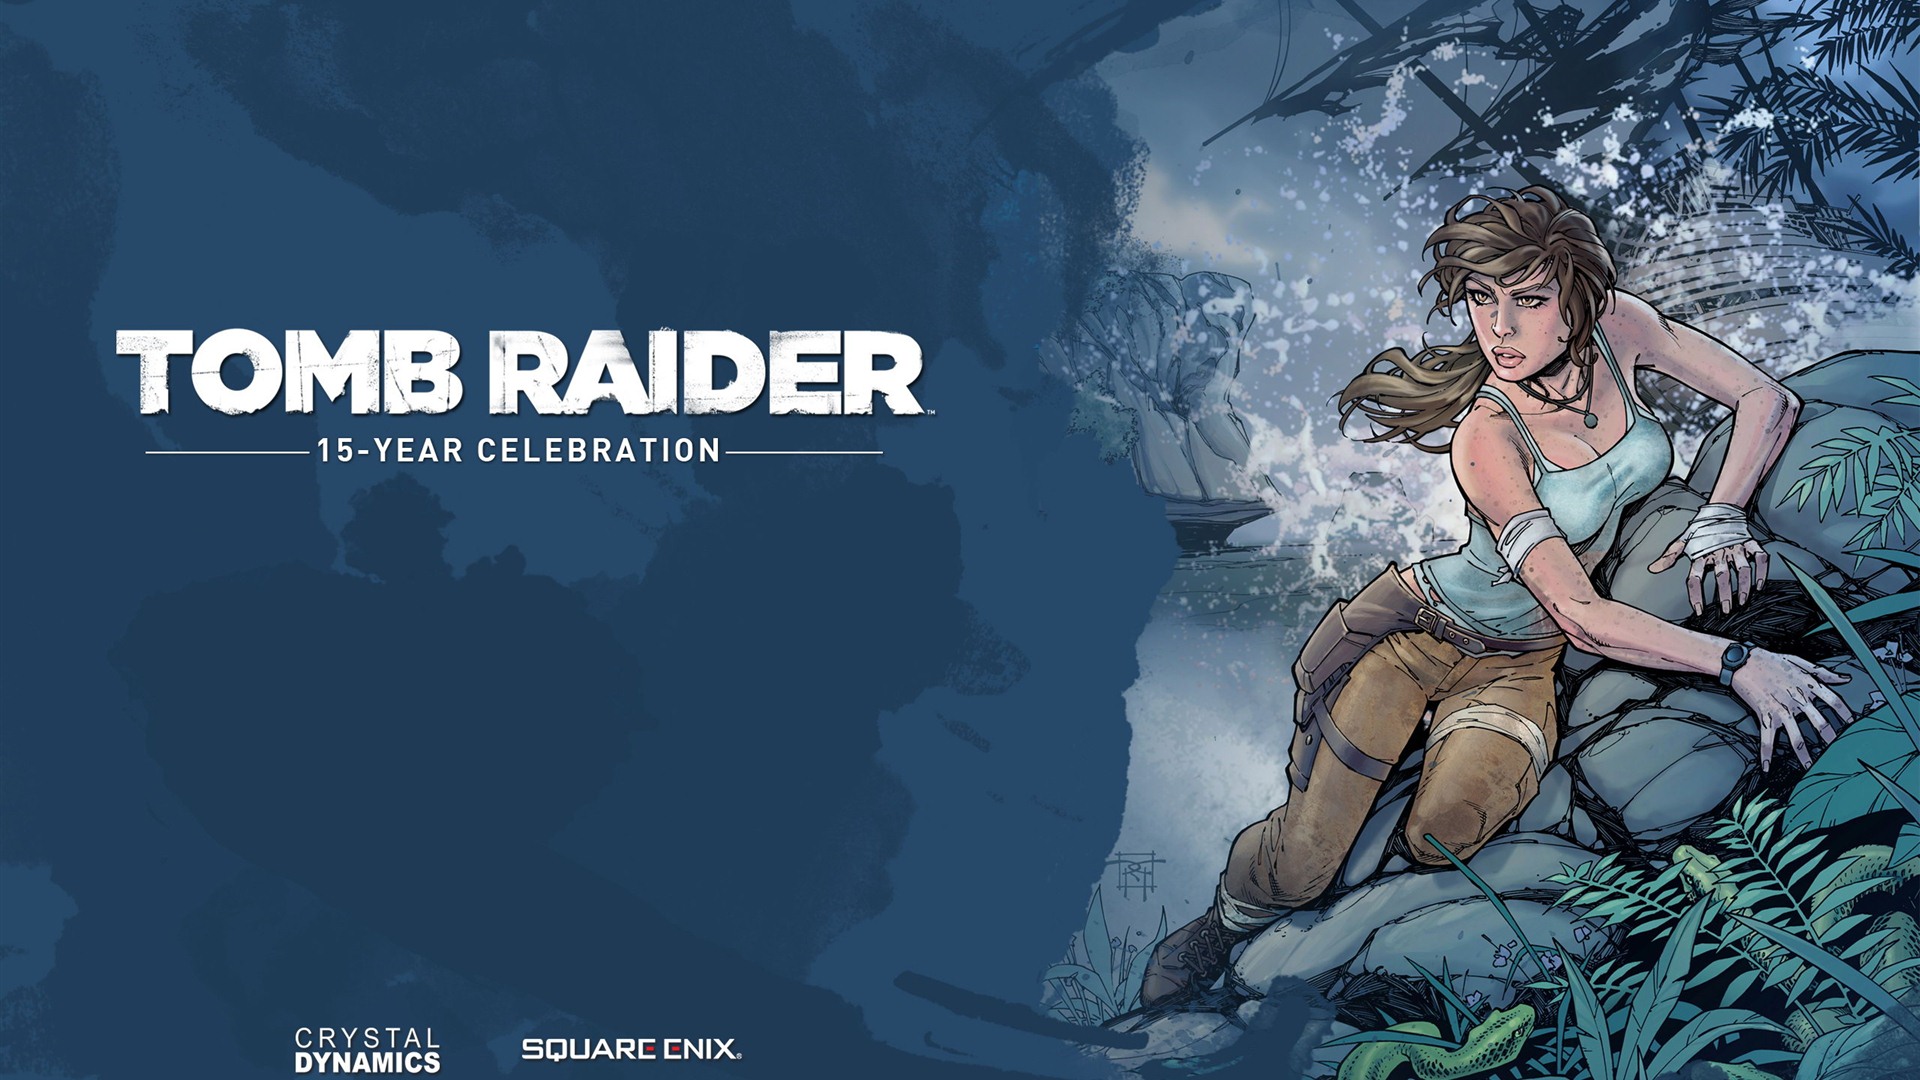 Tomb Raider 15-Year Celebration 古墓丽影15周年纪念版 高清壁纸12 - 1920x1080